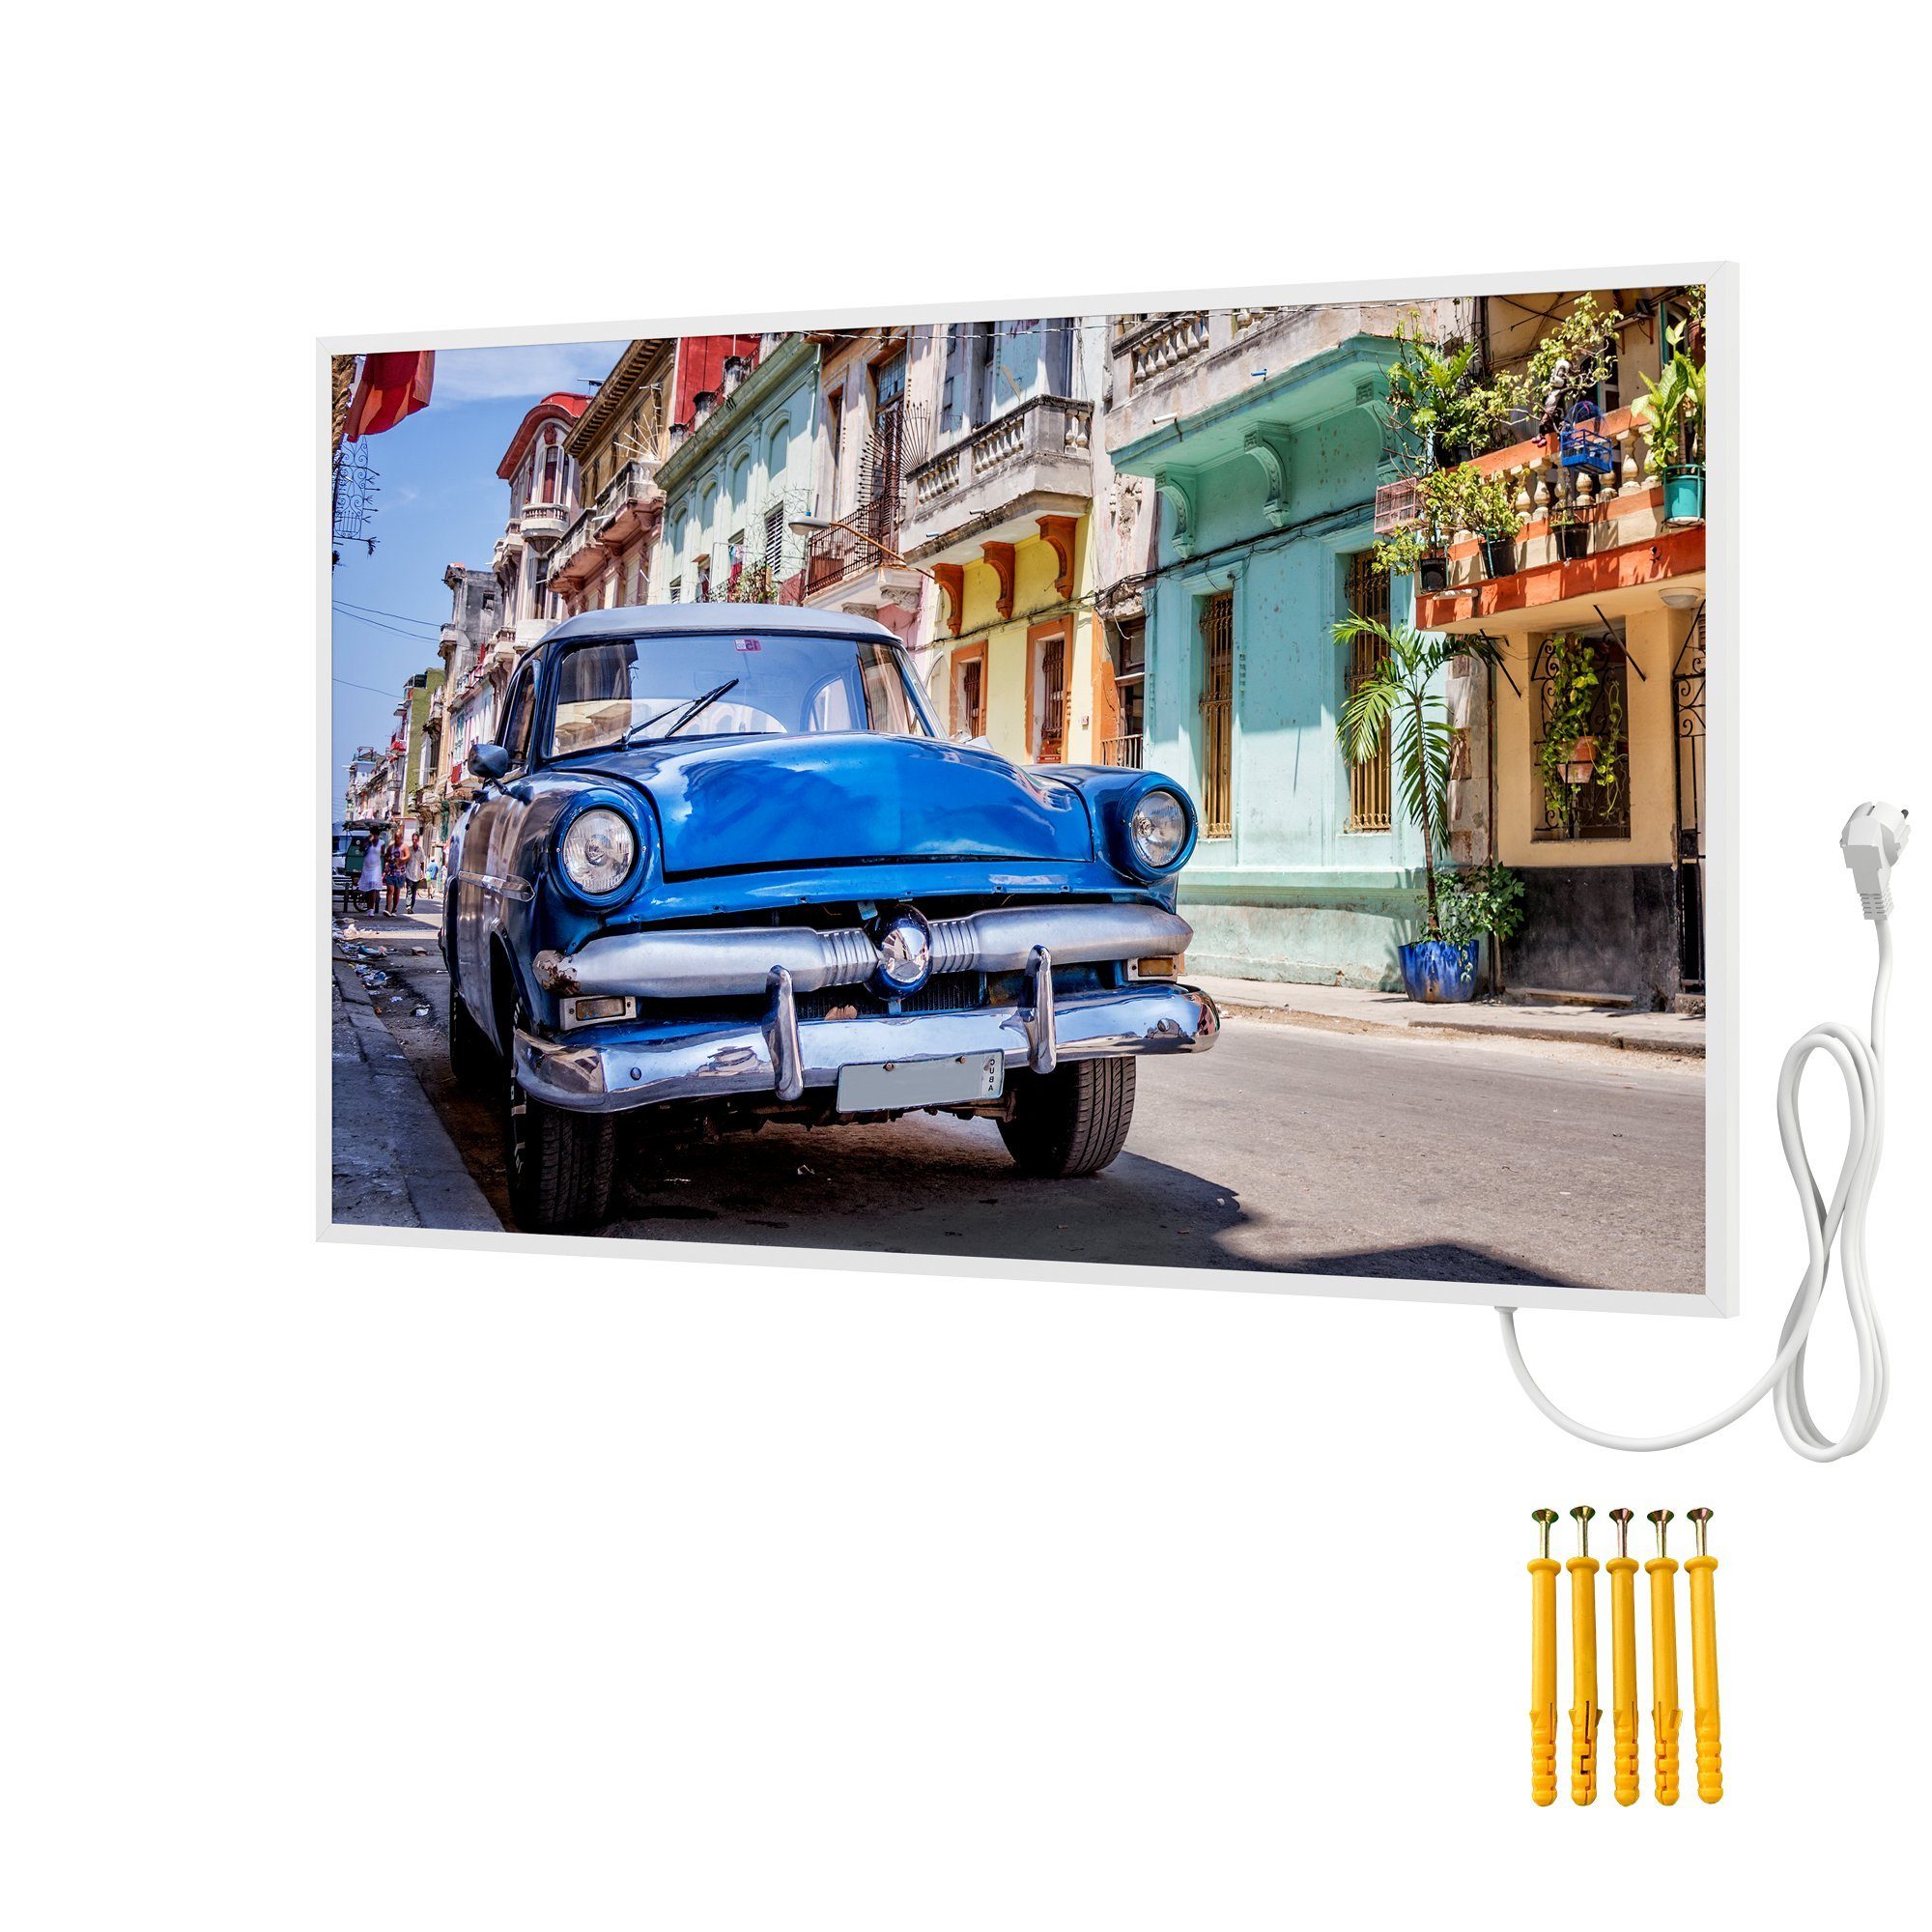 Bringer Infrarotheizung Bildheizung, Bild Infrarotheizung mit Rahmen, Motiv: Havanna, Kuba